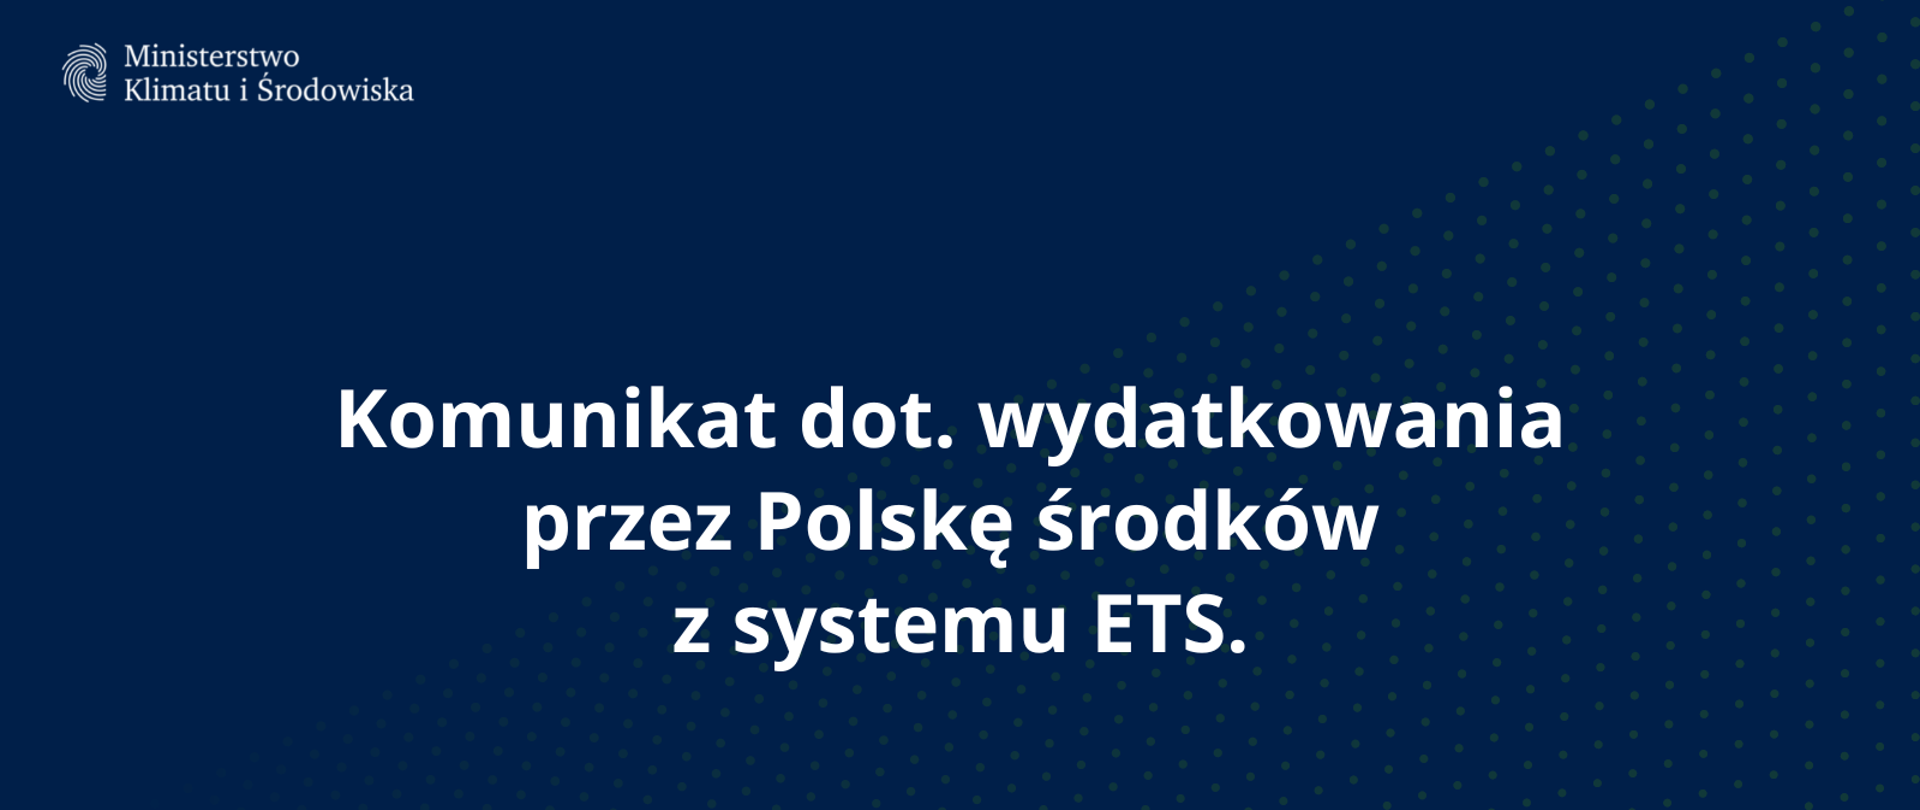 Komunikat dot. wydatkowania przez Polskę środków z systemu ETS.